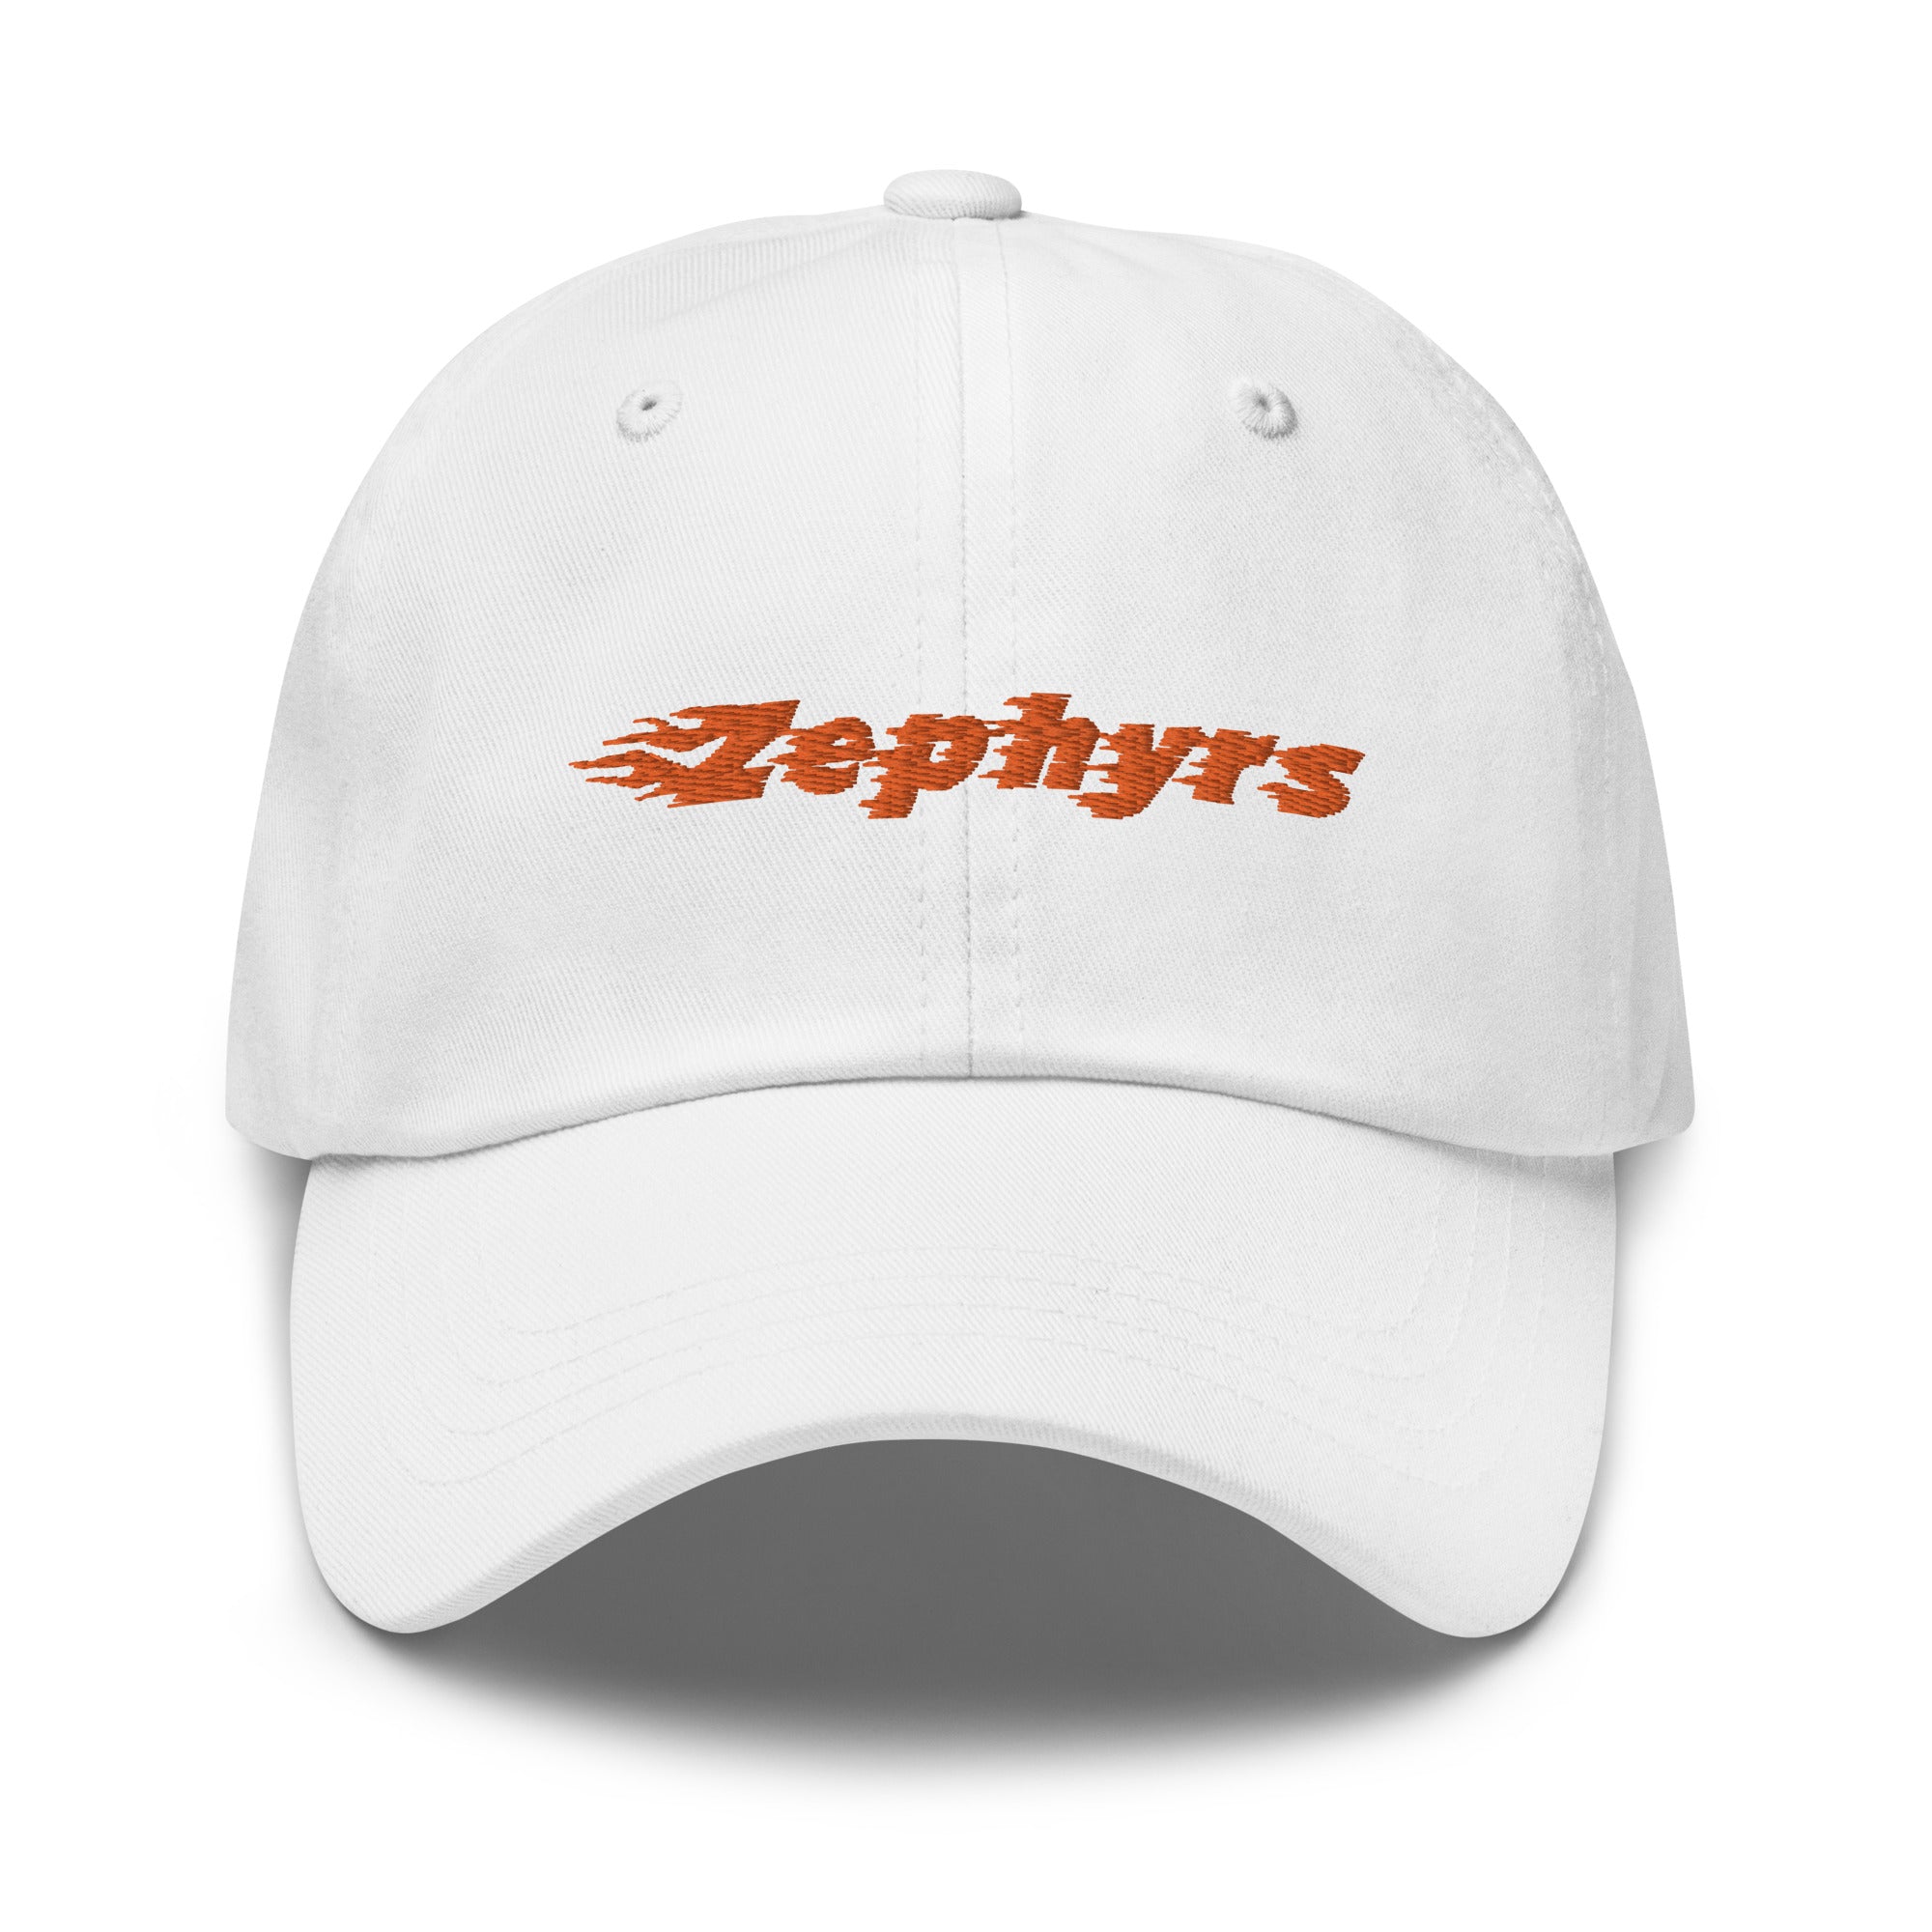 Zephyrs Dad hat